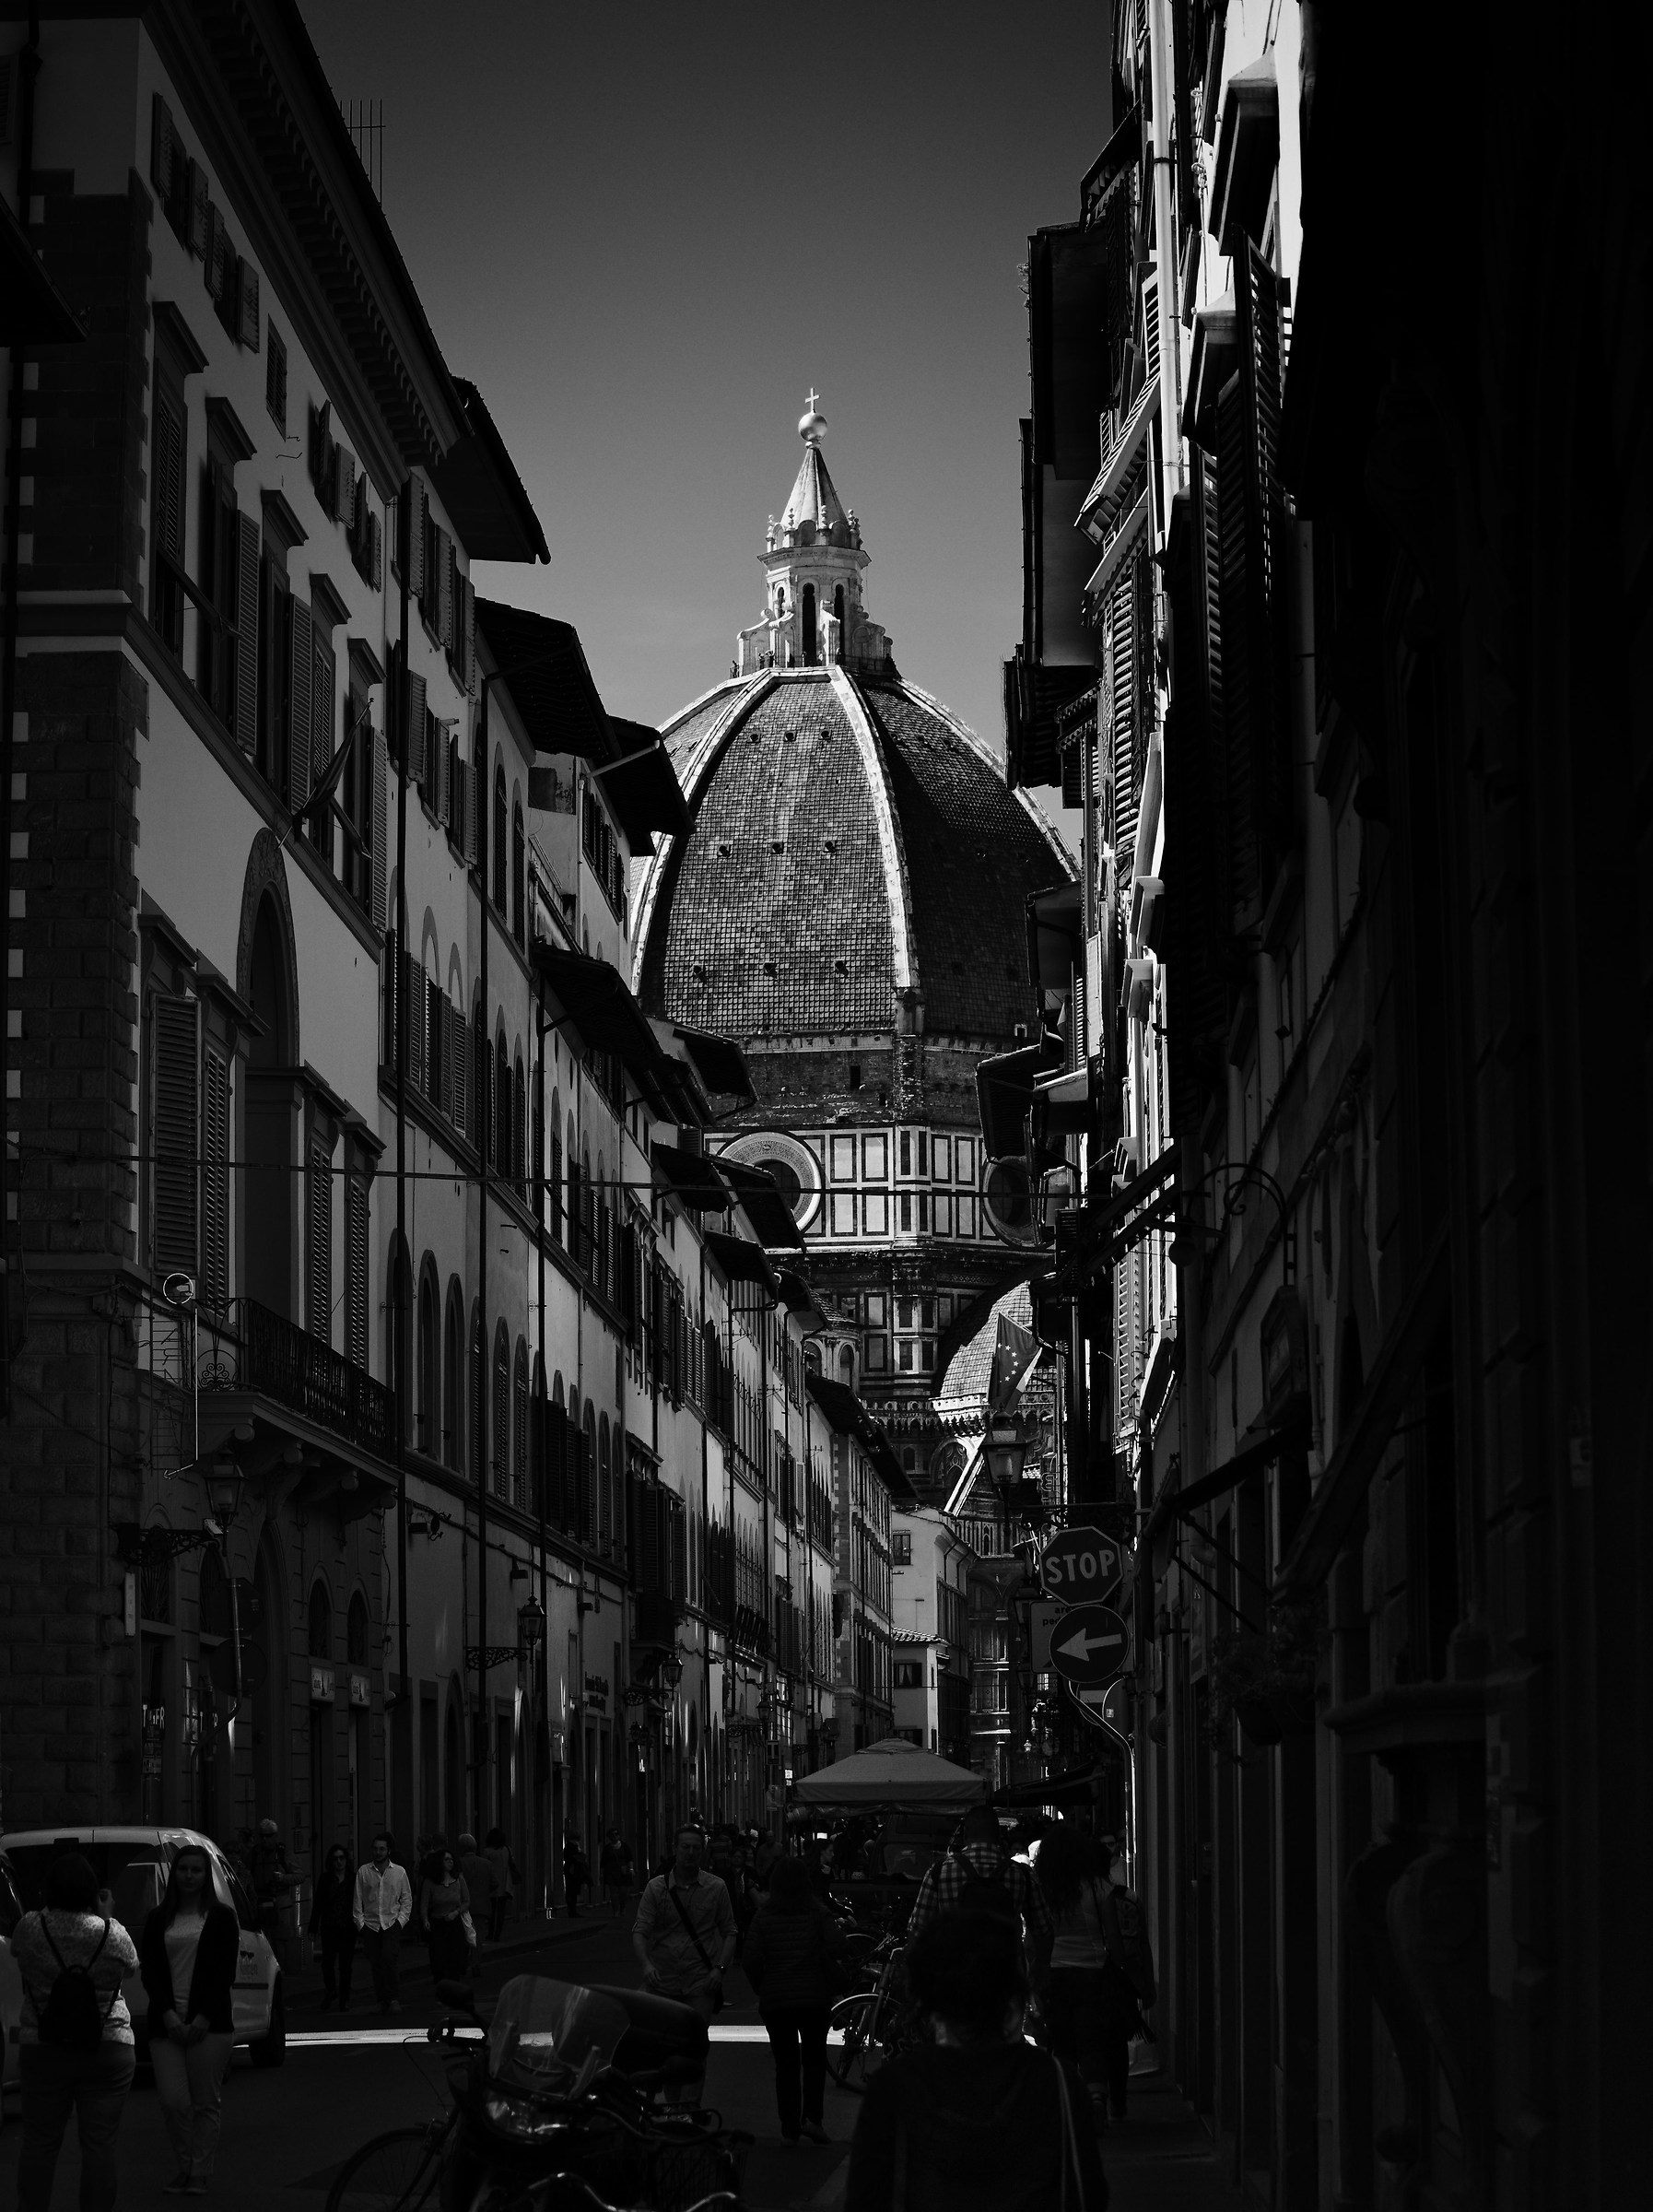 Per le strade di Firenze...